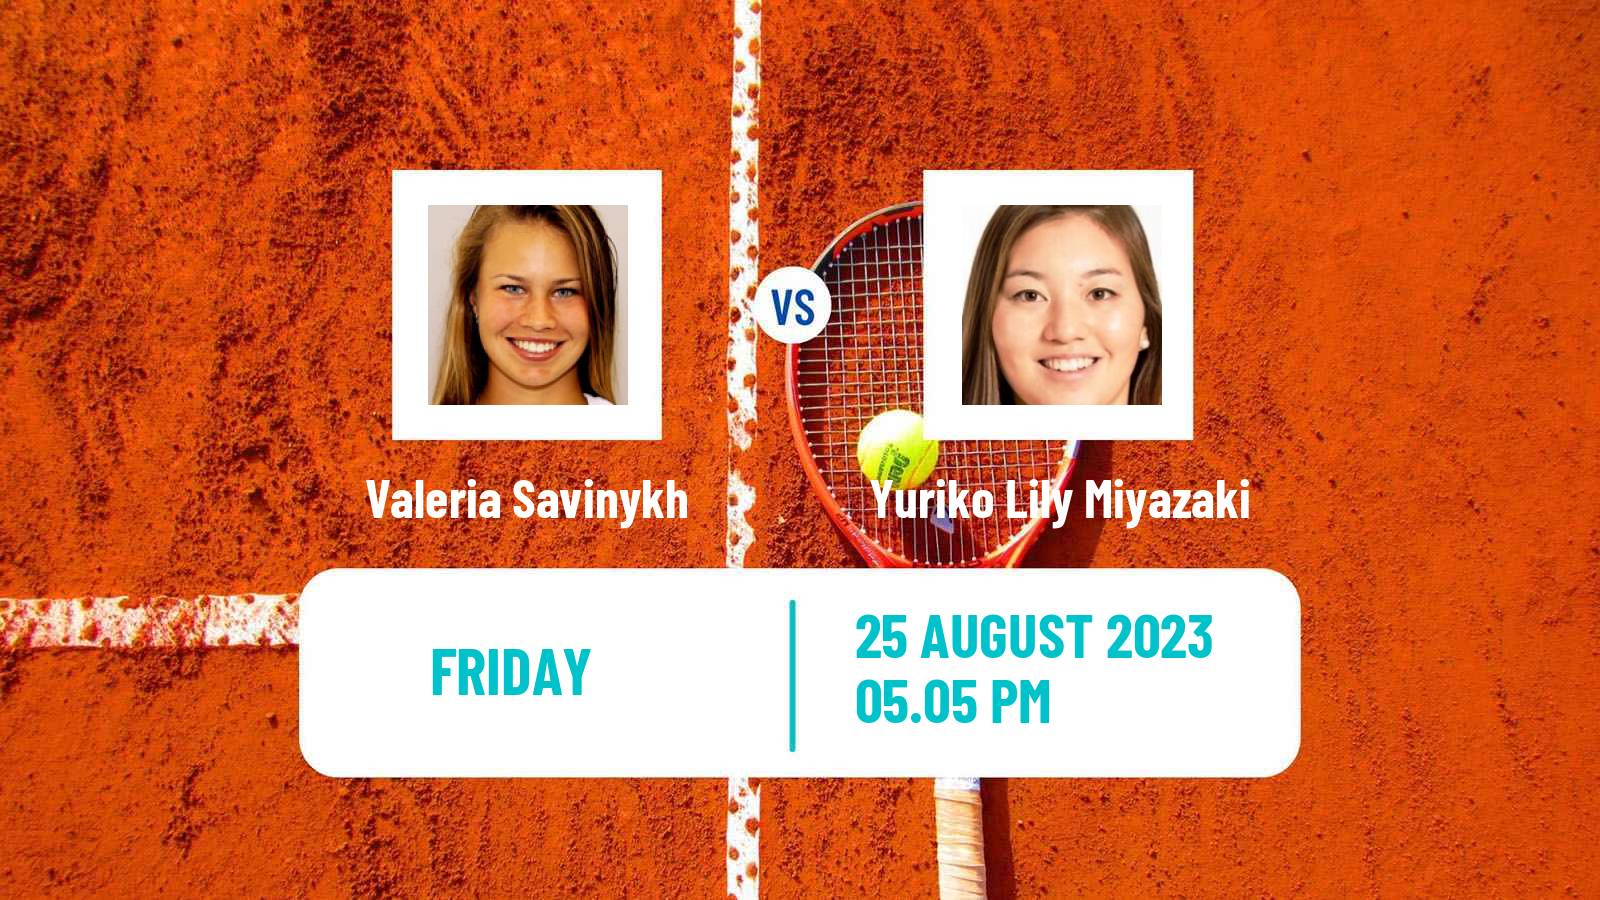 Tennis WTA US Open Valeria Savinykh - Yuriko Lily Miyazaki